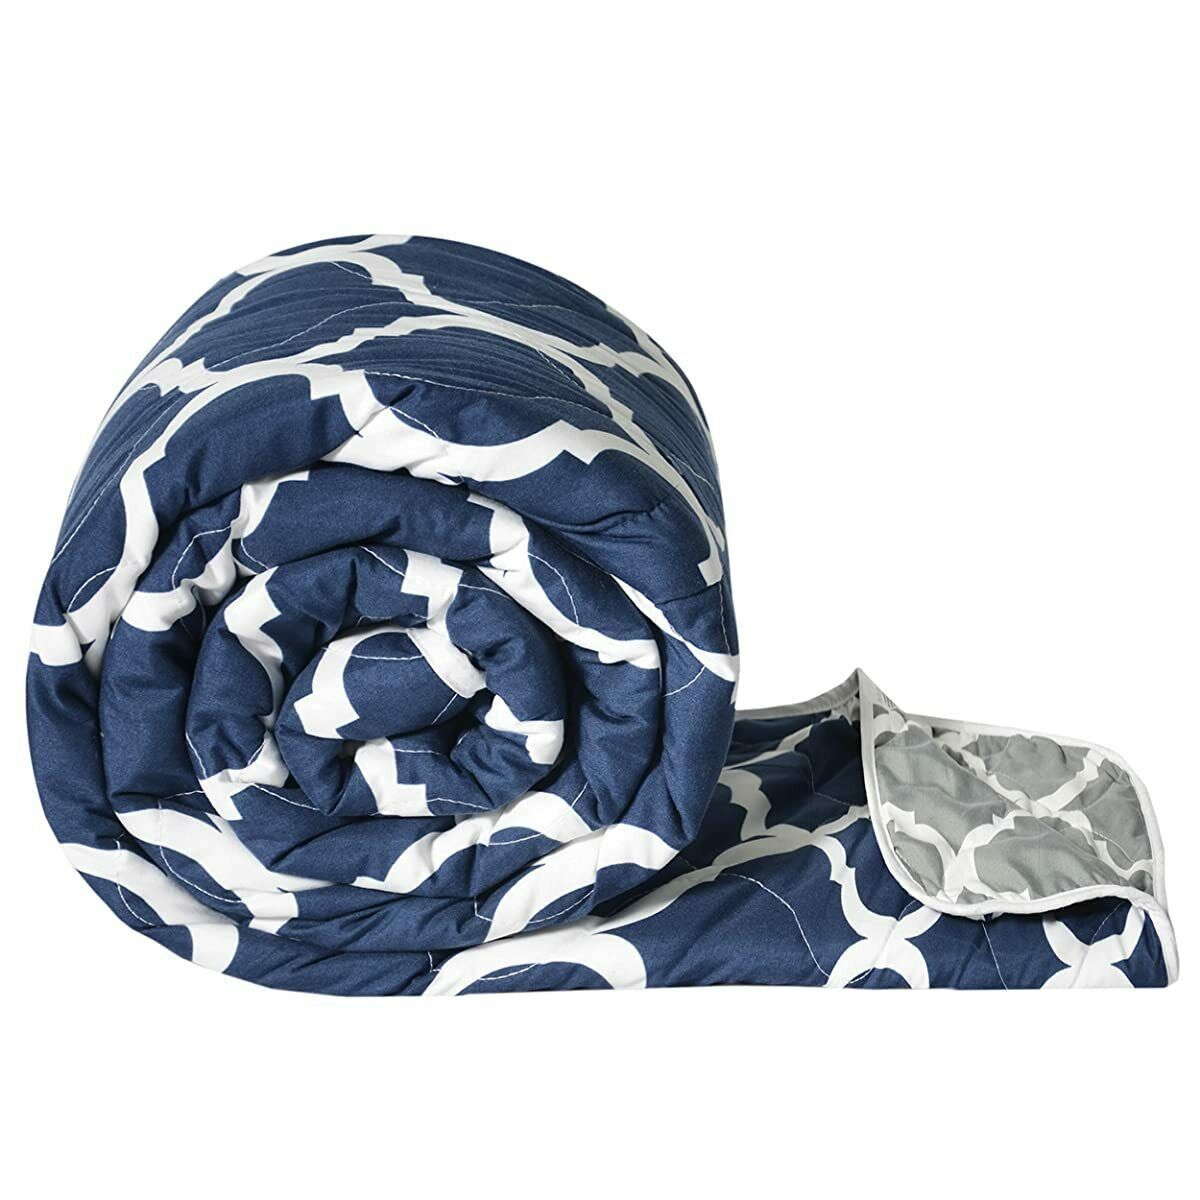 Comforter Blanket Light Weight Quilt Duvet, Navy Blue & White | FREE SHIPPING